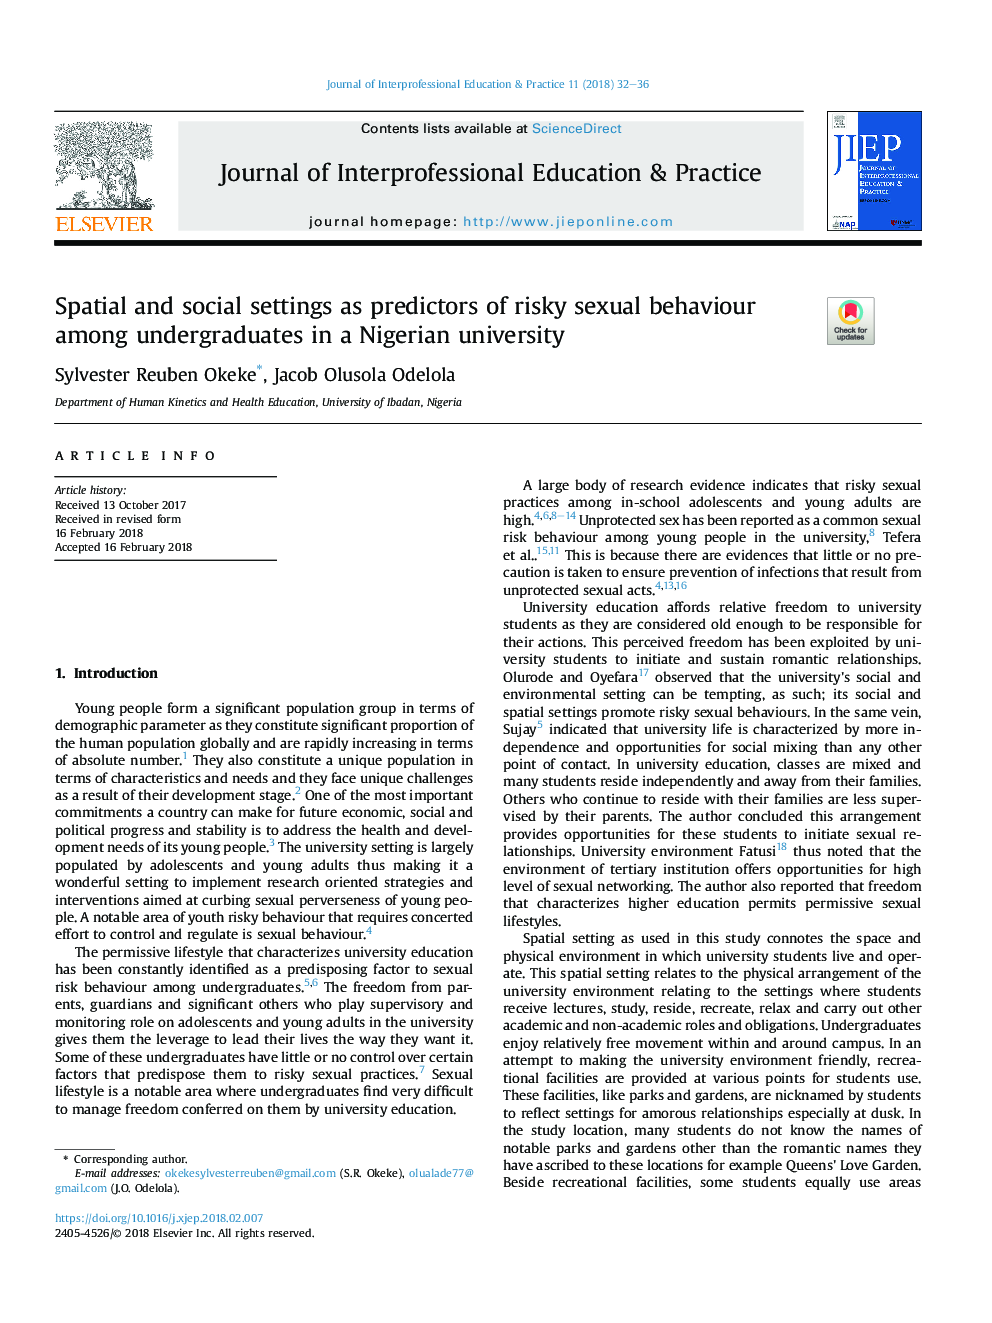 تنظیمات مکانی و اجتماعی به عنوان پیش بینی کننده رفتار جنسی مخاطره آمیز در میان دانشجویان مقطع کارشناسی در دانشگاه نیجریه 